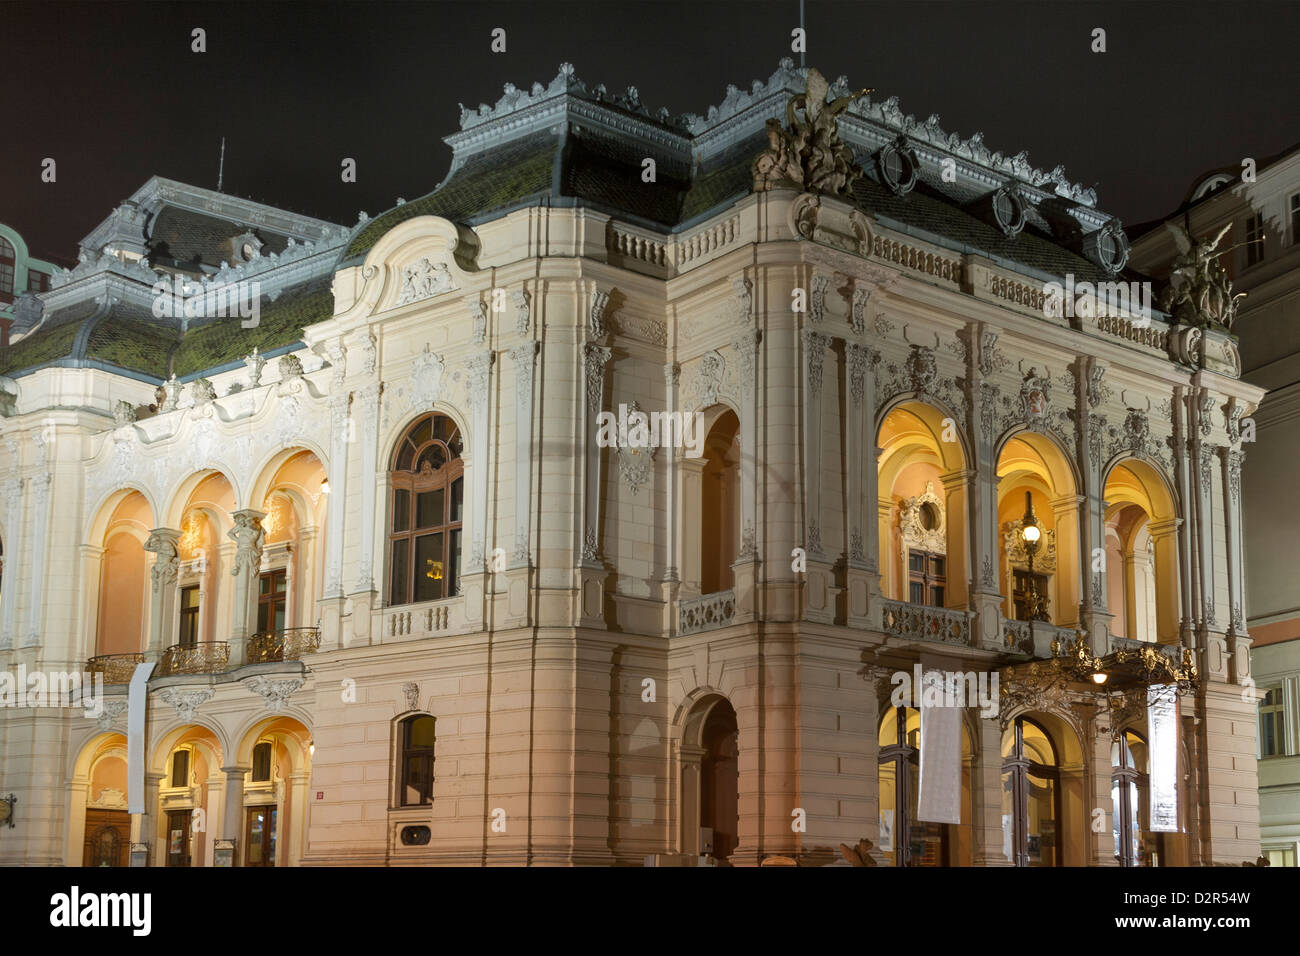 Vue de nuit sur la ville de Karlovy Vary l'Opéra Théâtre 1886 par l'architecte viennois Ferdinand Fellner et Hermann Helmer. Banque D'Images